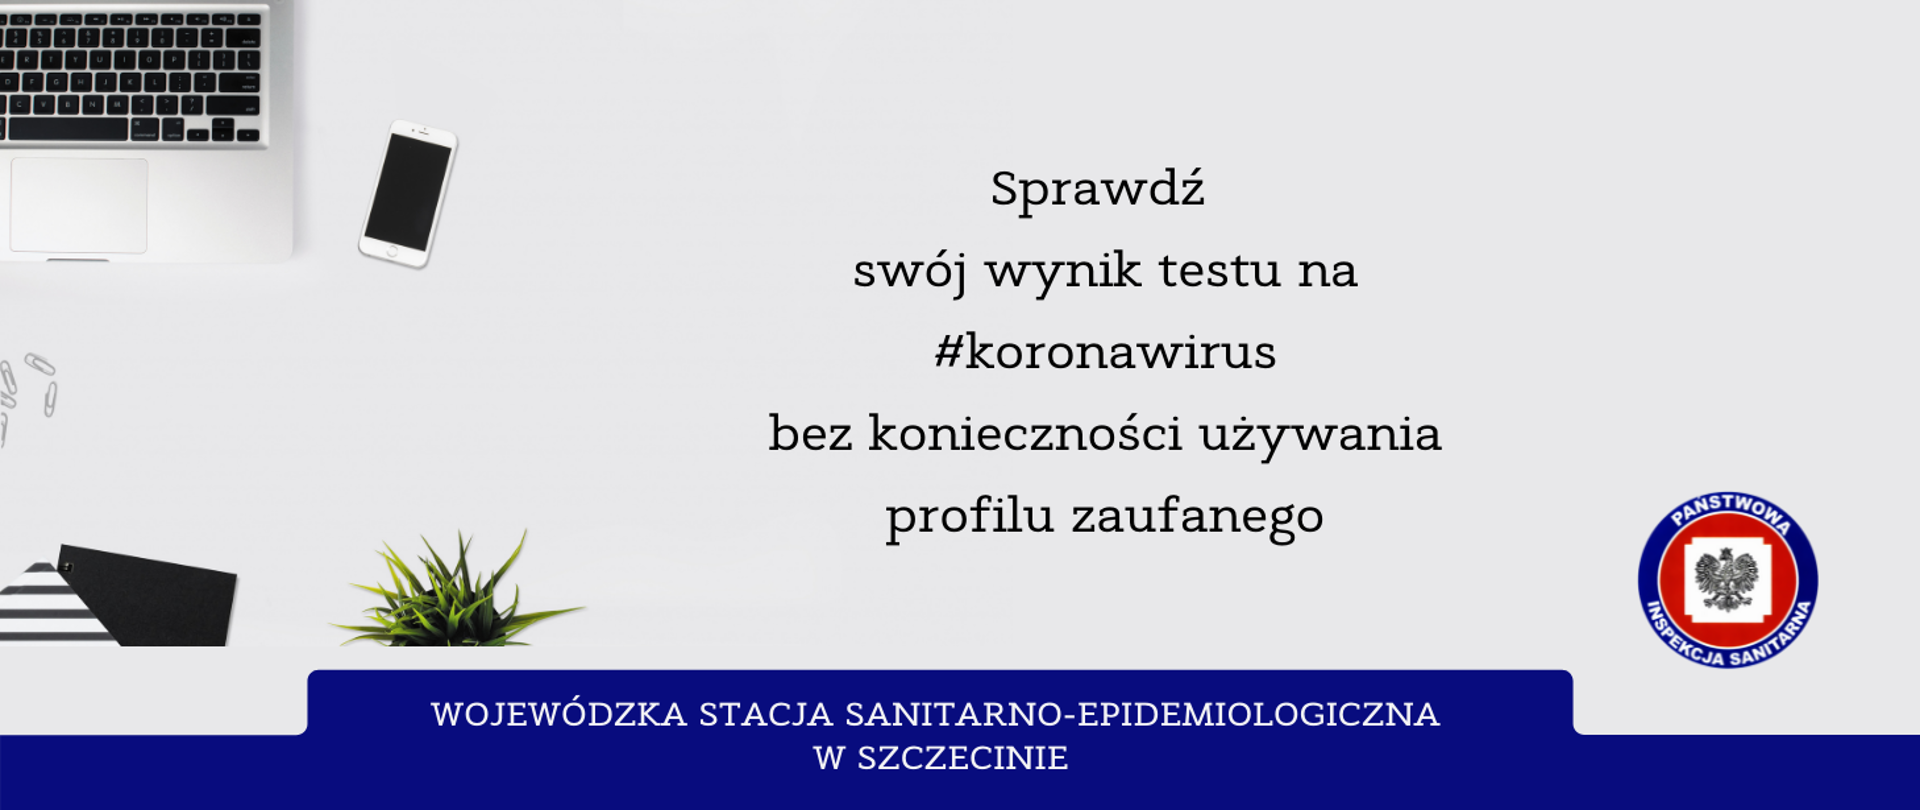 Na zdjęciu znajduje się napis Sprawdź swój wynik testu na #koronawirus bez konieczności używania profilu zaufanego. Widoczny jest laptop, telefon komórkowy, artykuły biurowe. Na dole strony znajduje się logo Inspekcji Sanitarnej i napis Wojewódzka Stacja Sanitarno-Epidemiologiczna w Szczecinie